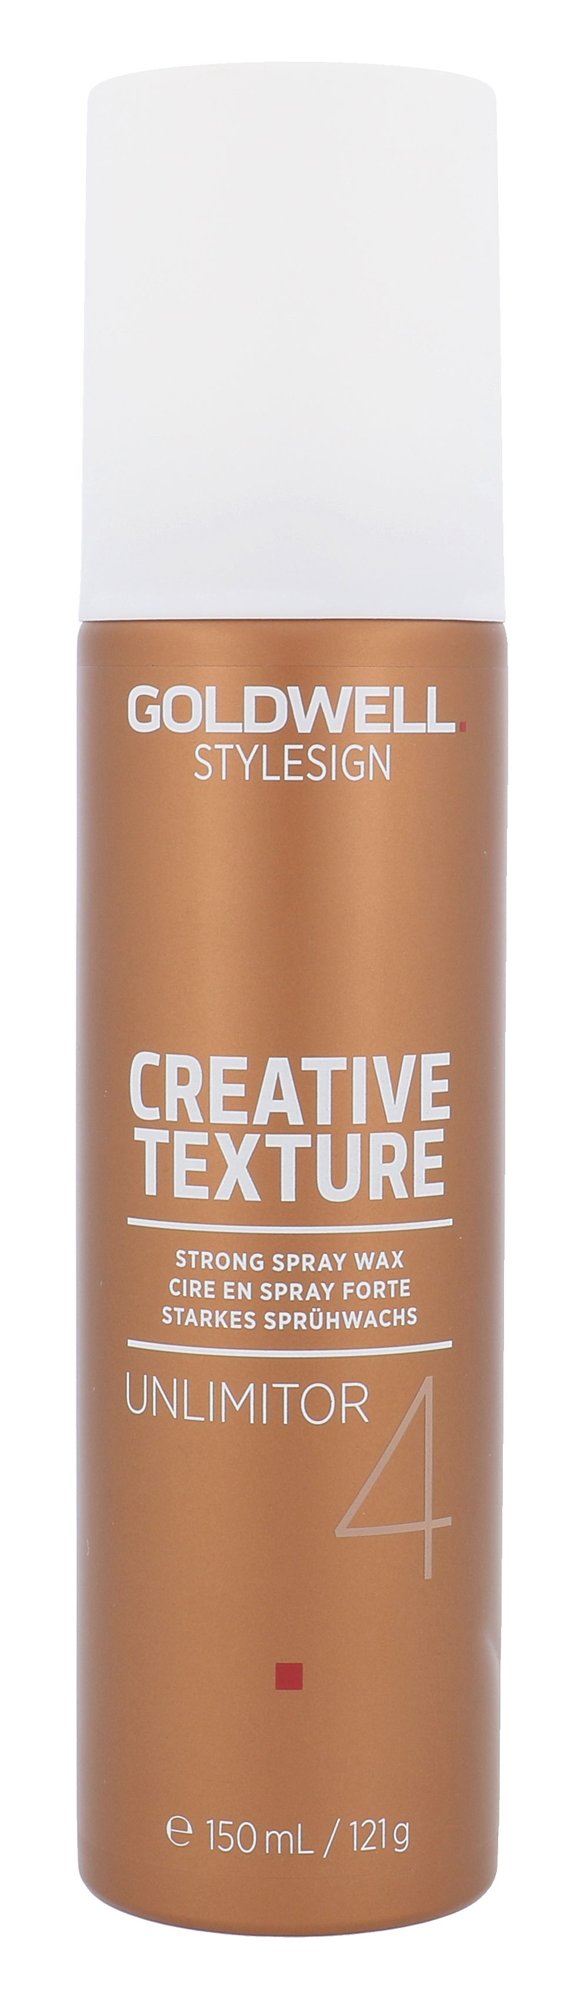 Goldwell Style Sign Creative Texture 150ml plaukų vaškas